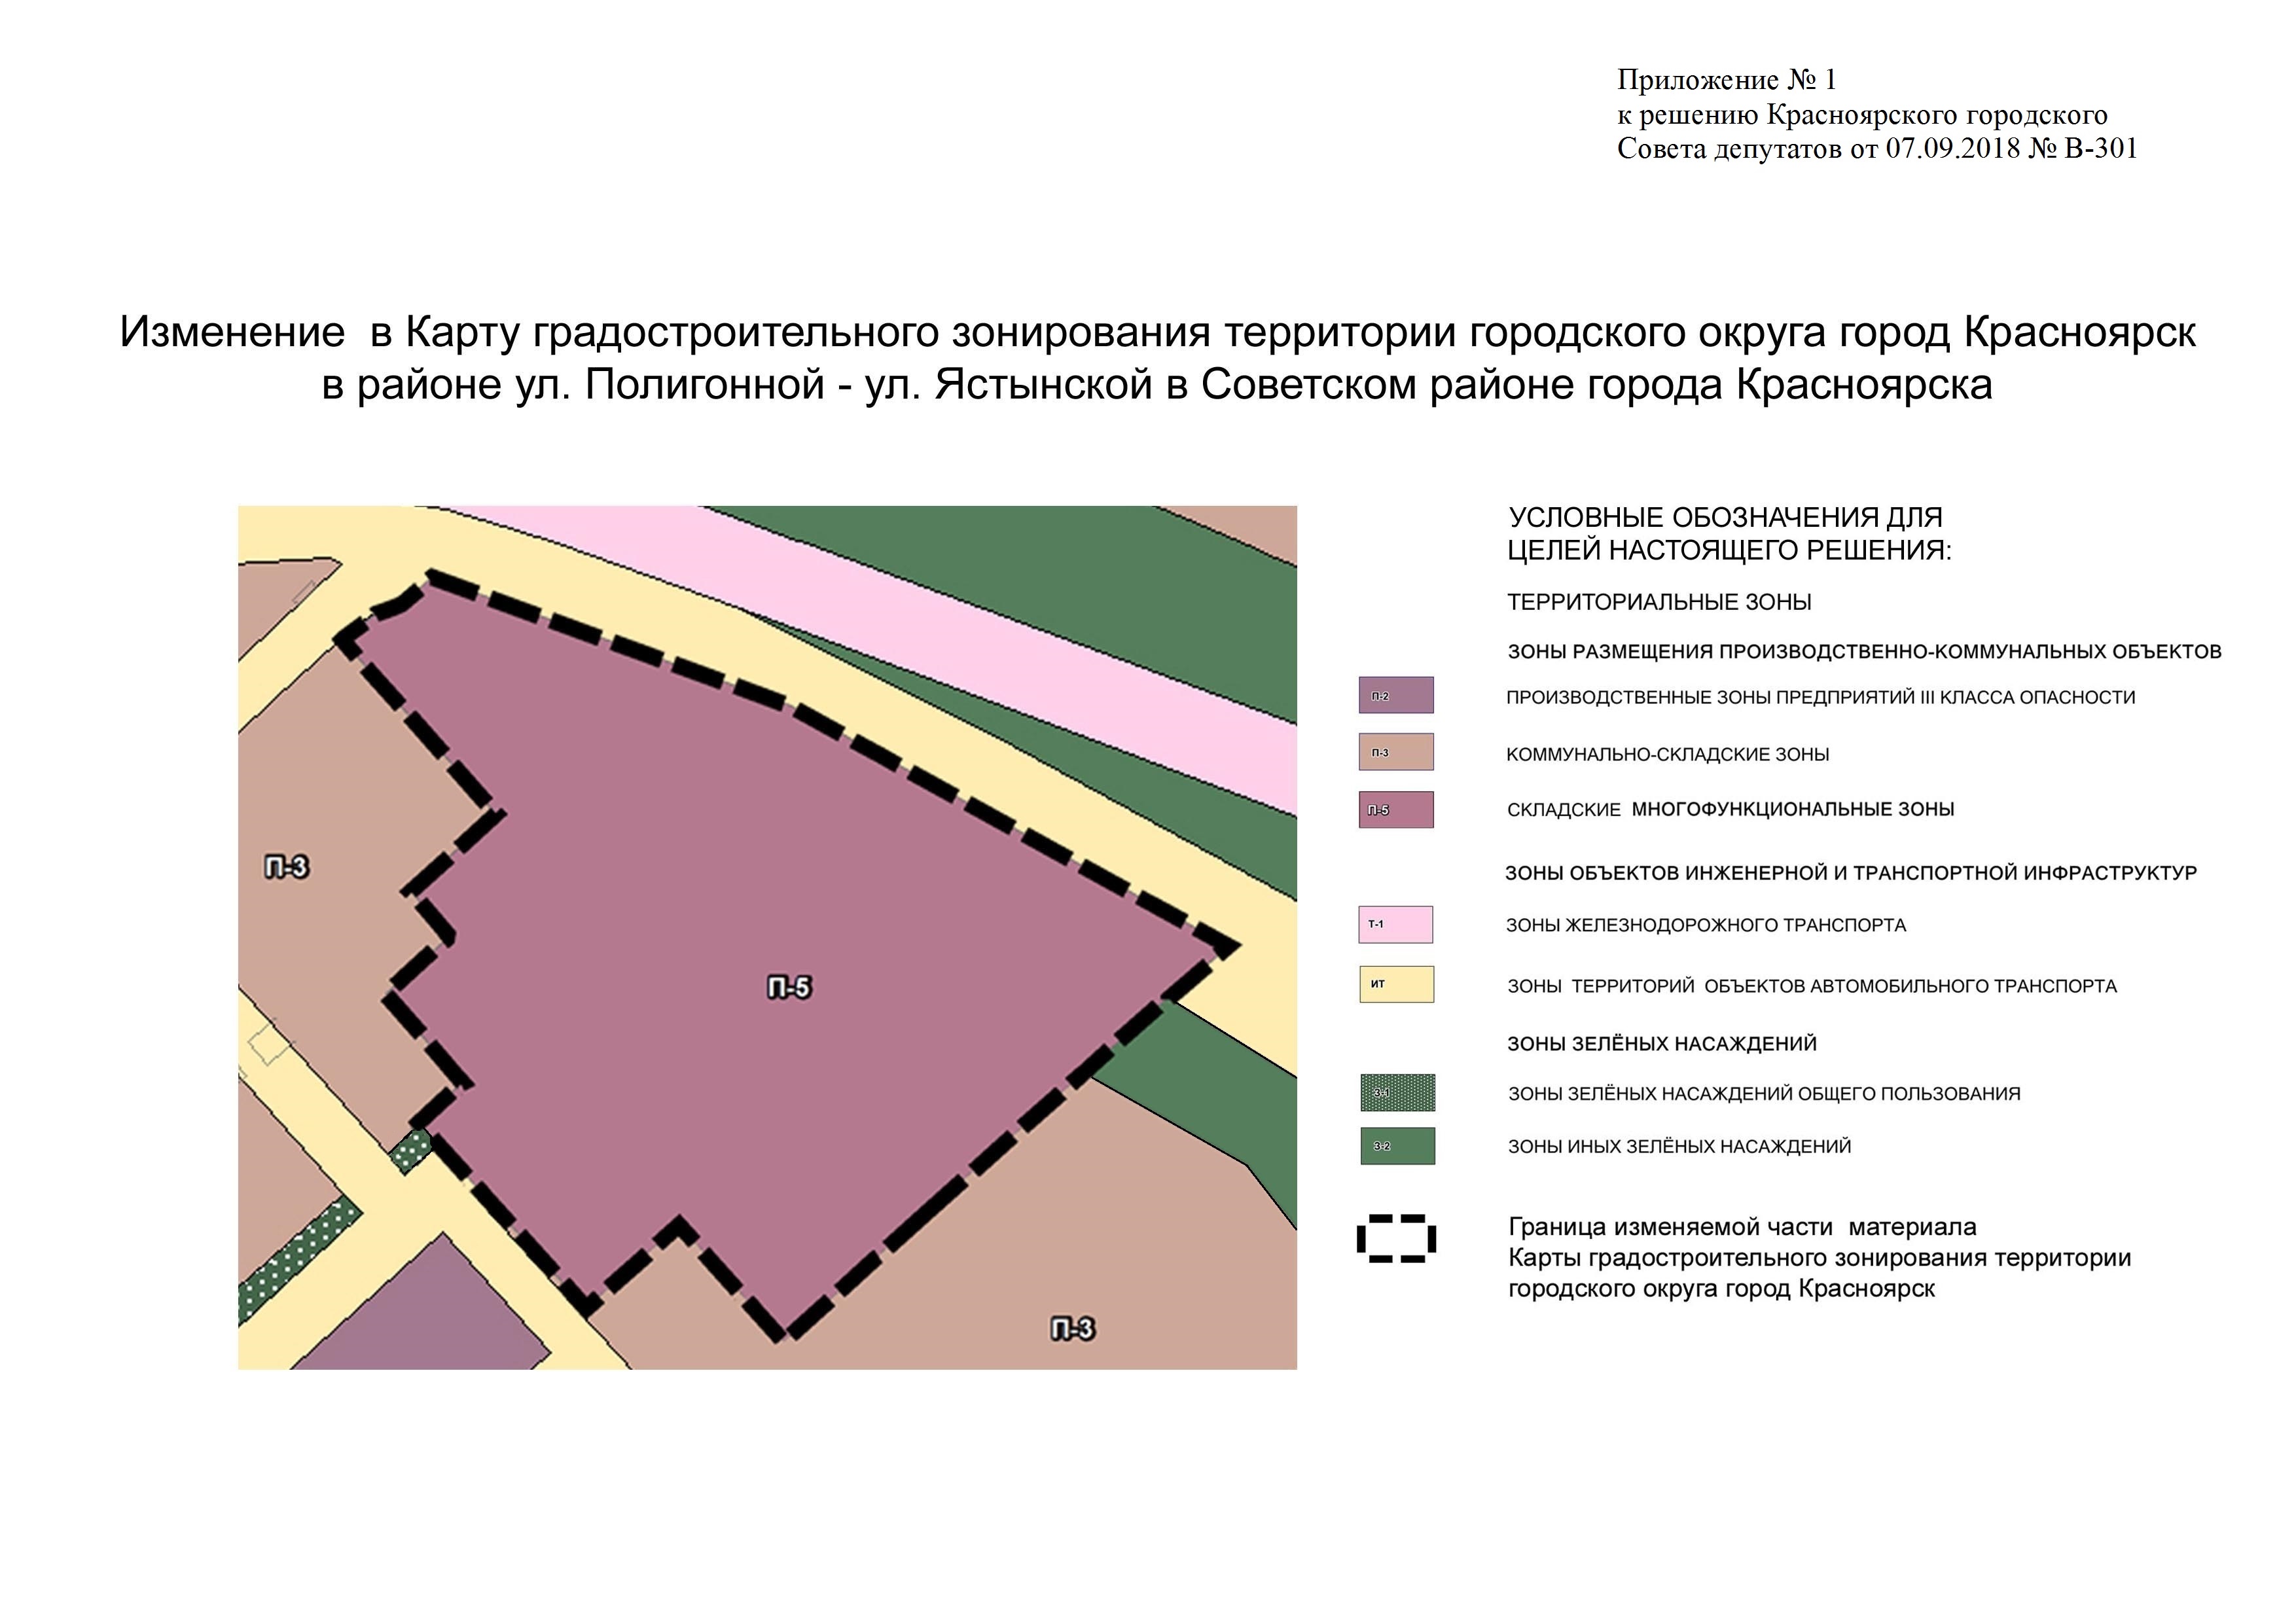 Схема зонирования территории города Красноярска